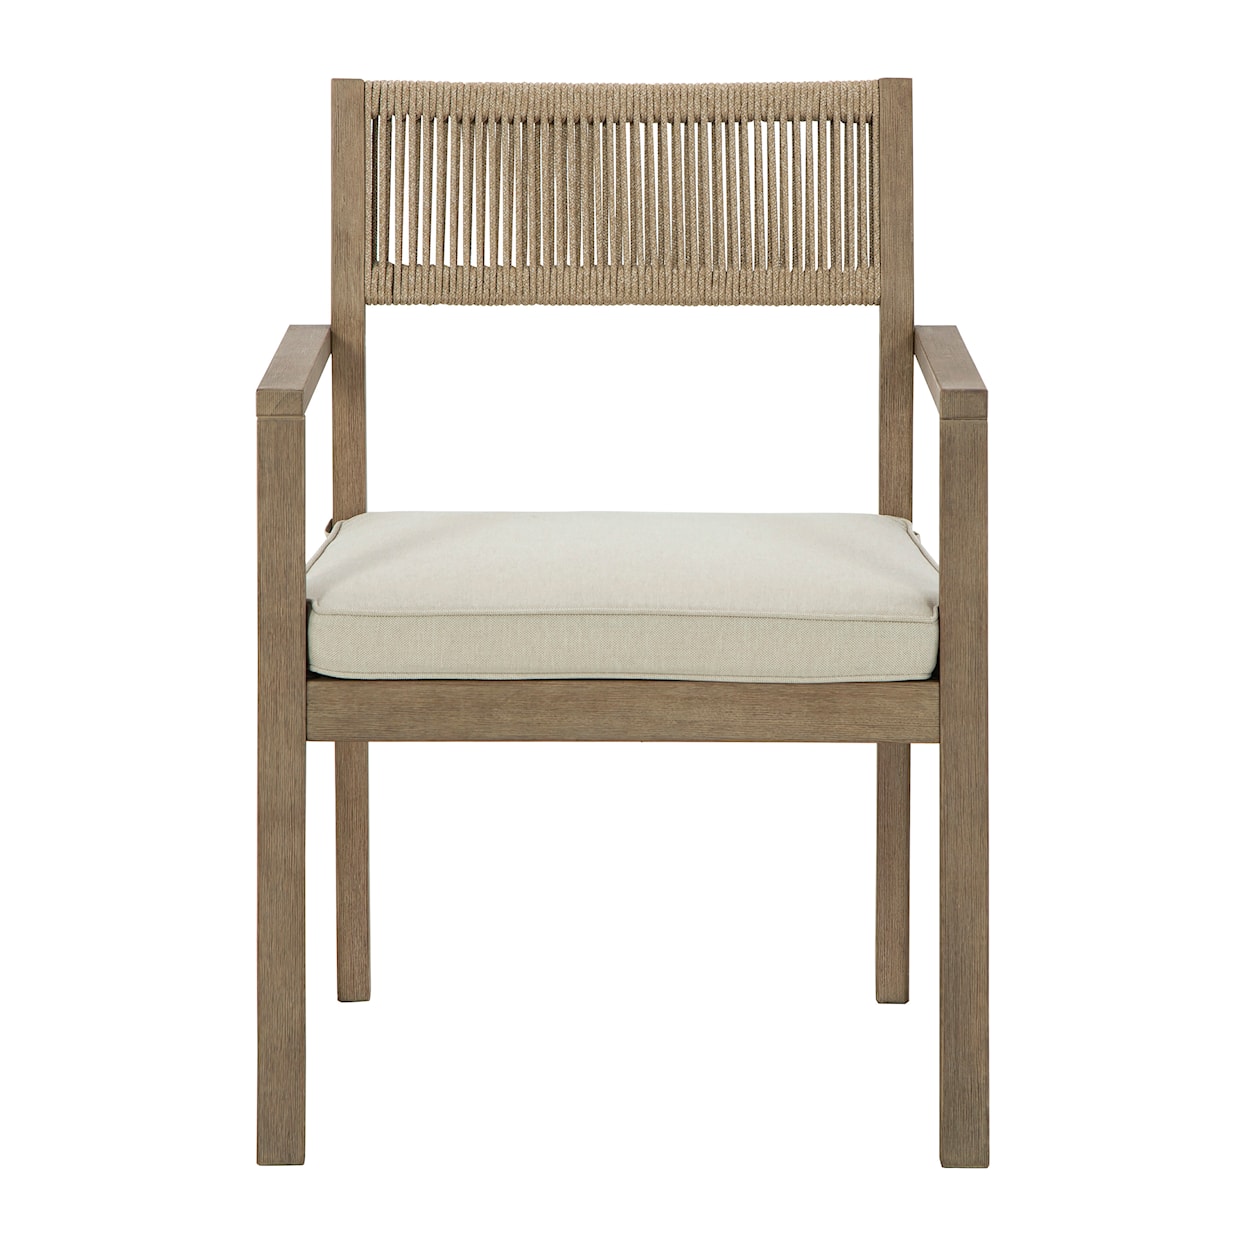 Ashley Furniture Signature Design Aria Plains Arm Chair with Cushion